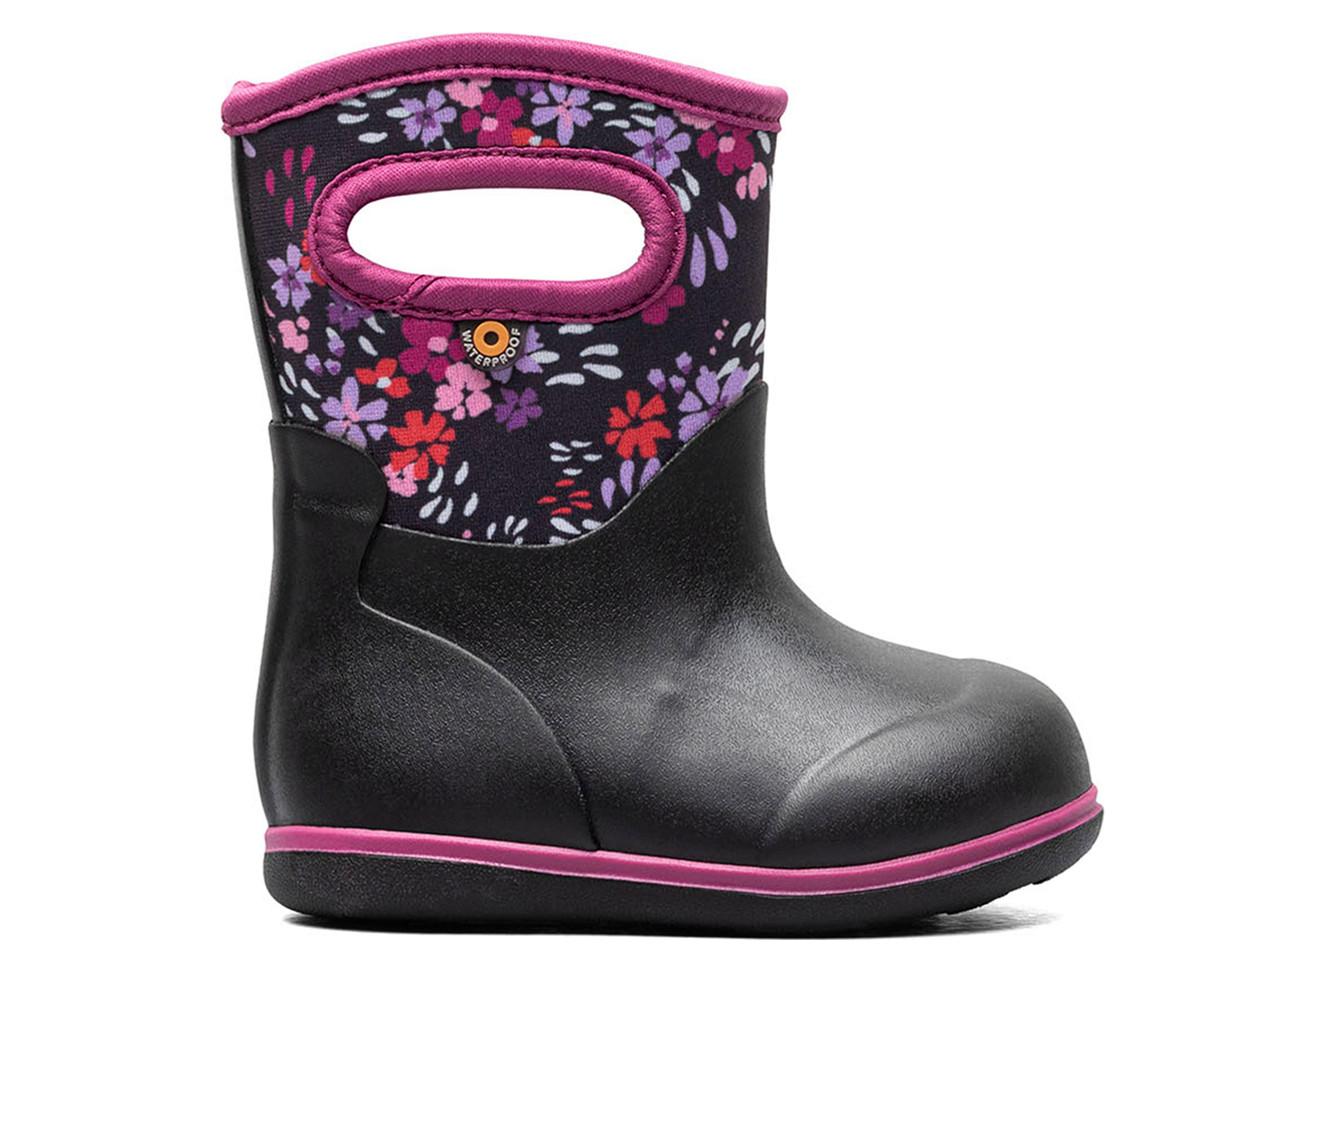 Girls' Bogs Footwear Toddler Classic Water Garden Rain Boots